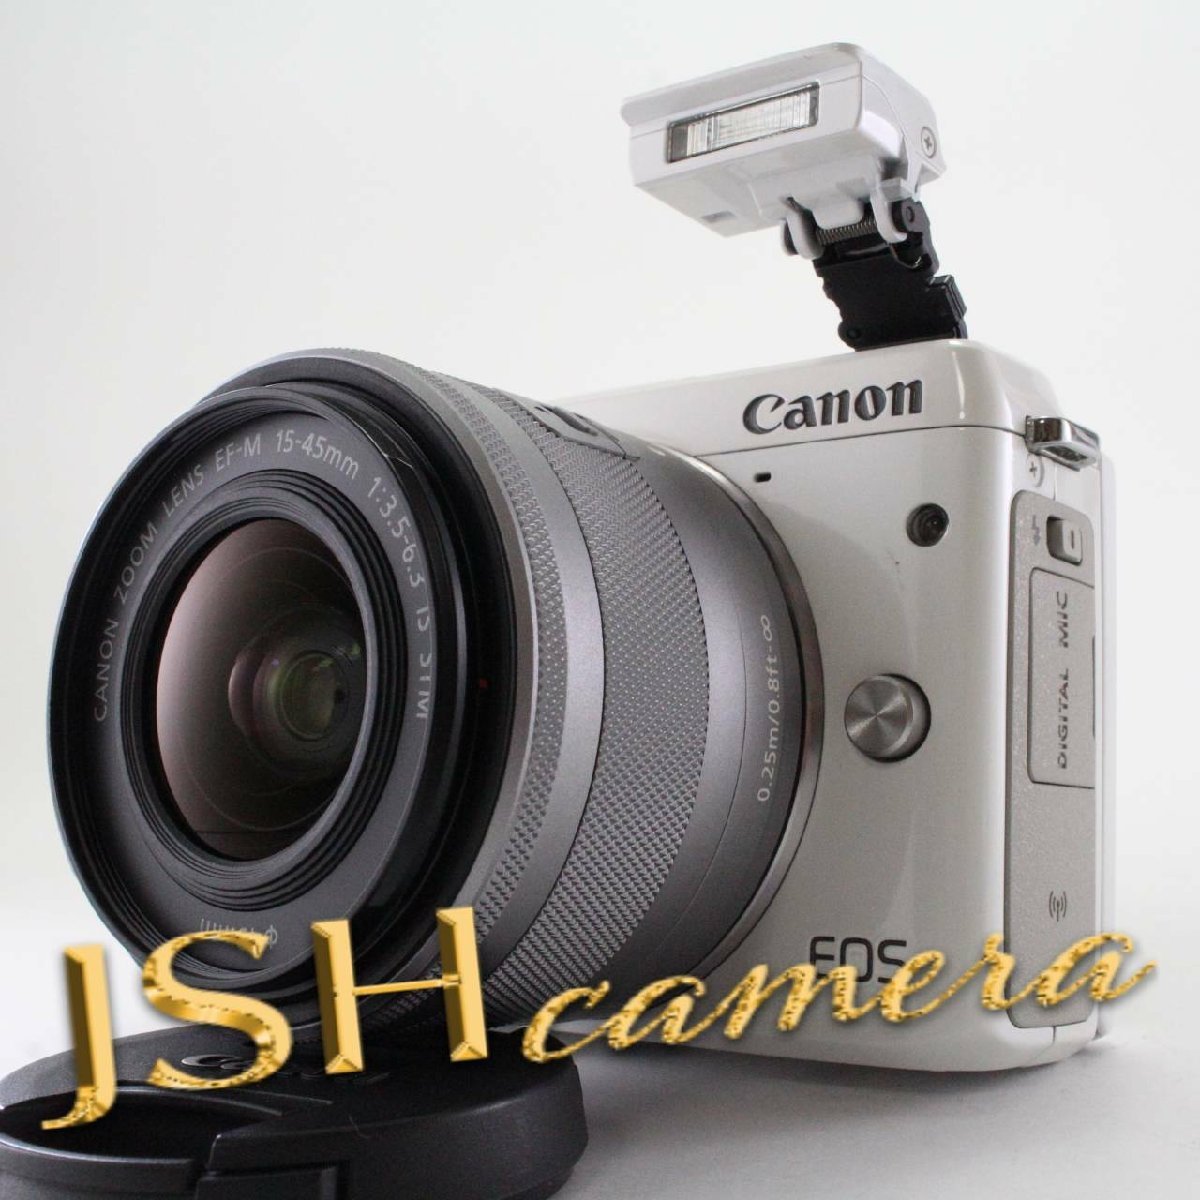 特別セール品】 Canon EOSM3WH-1545ISSTMLK 付属 STM IS F3.5-6.3 EF